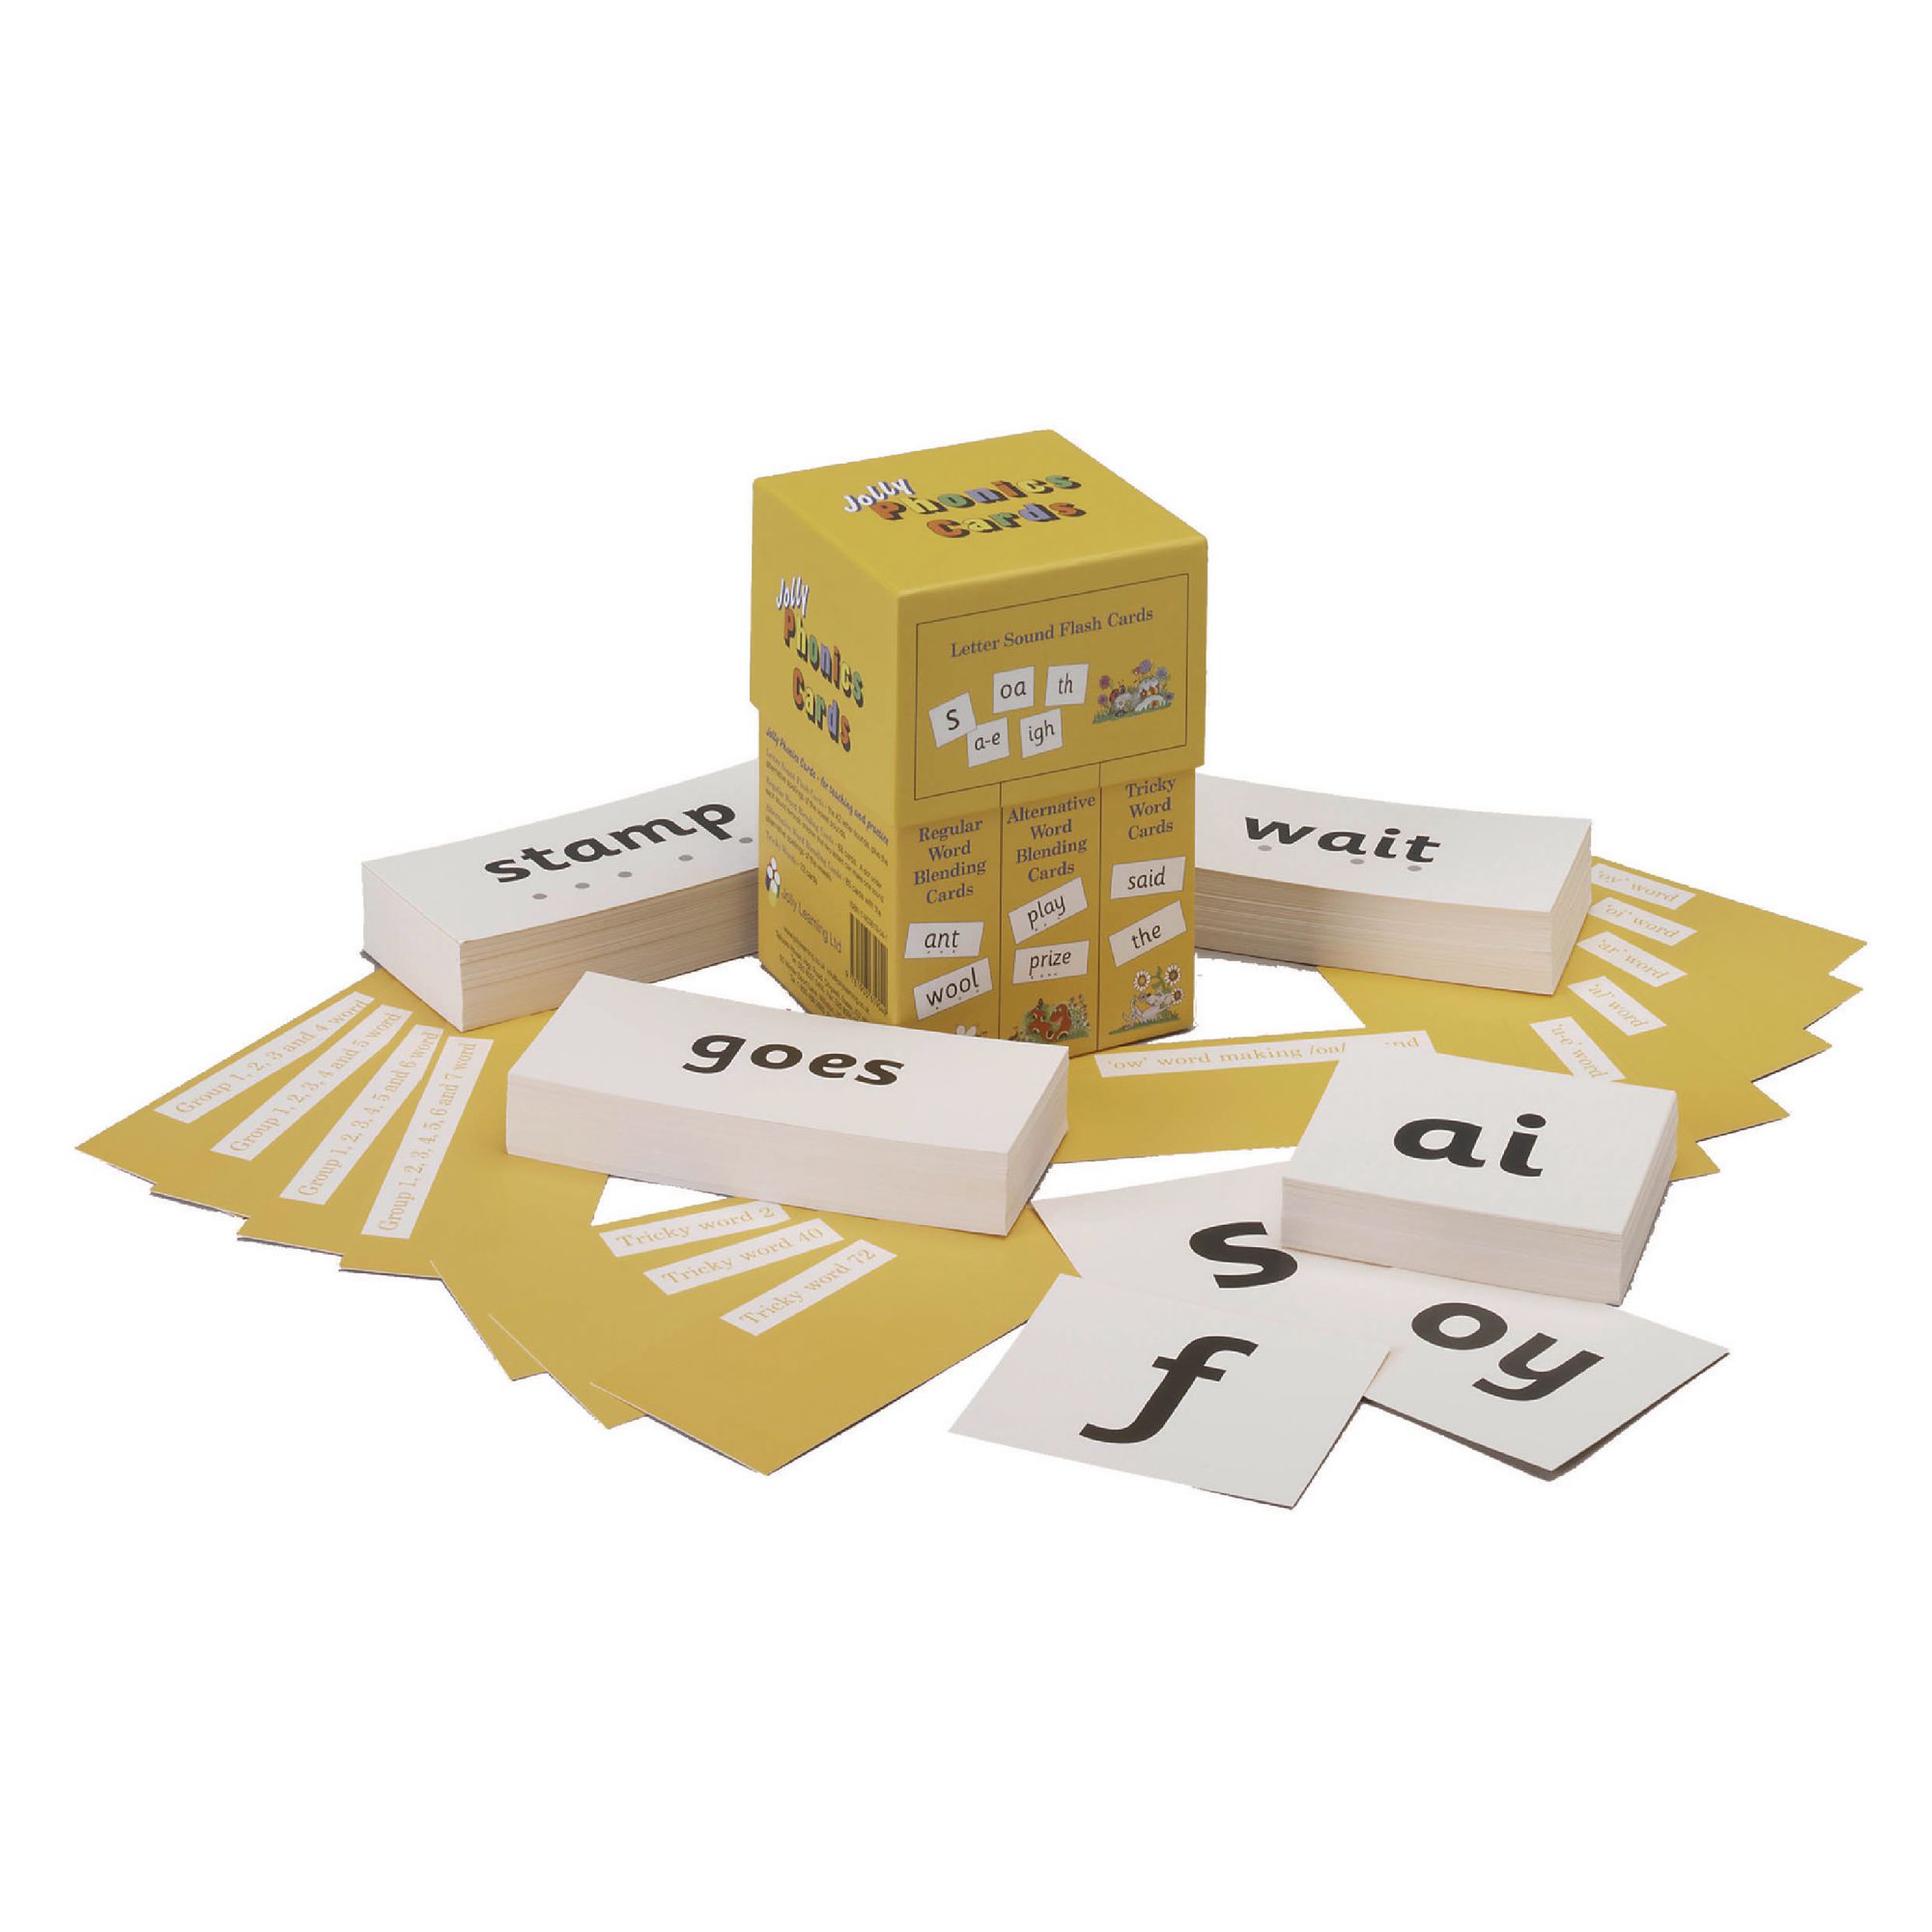 noodle-sandwich-alphabet-sounds-flash-cards